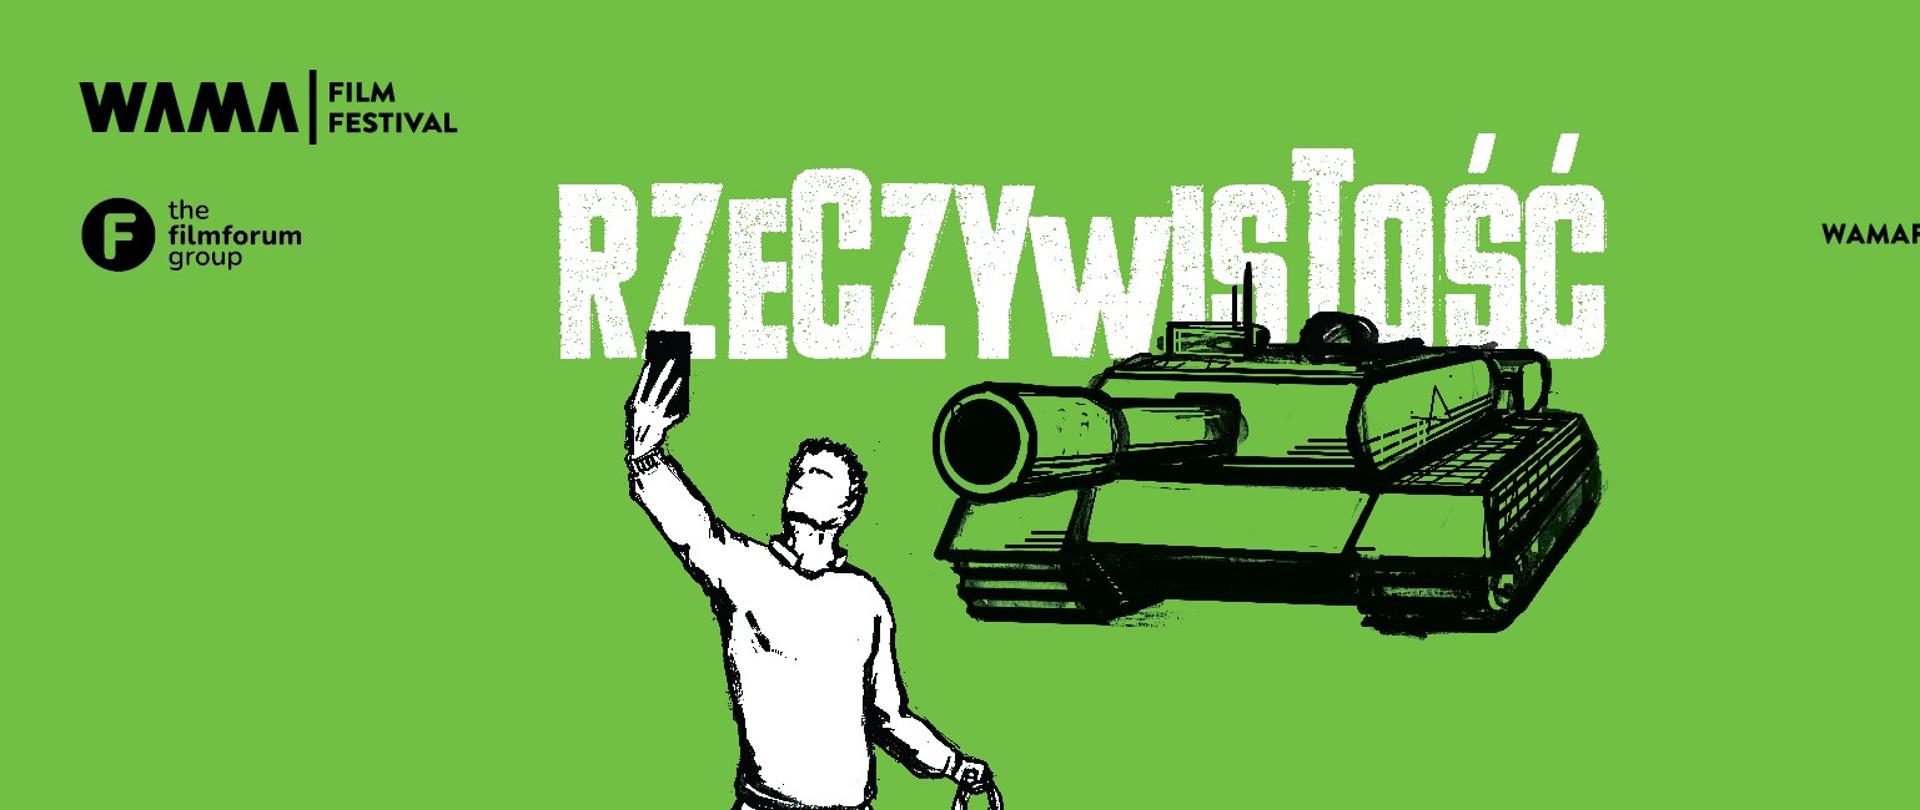 zielony plakat festiwalu WAMA z zarysem czołgu i postacią z telefonem w dłoni, na środku napis rzeczywistcość